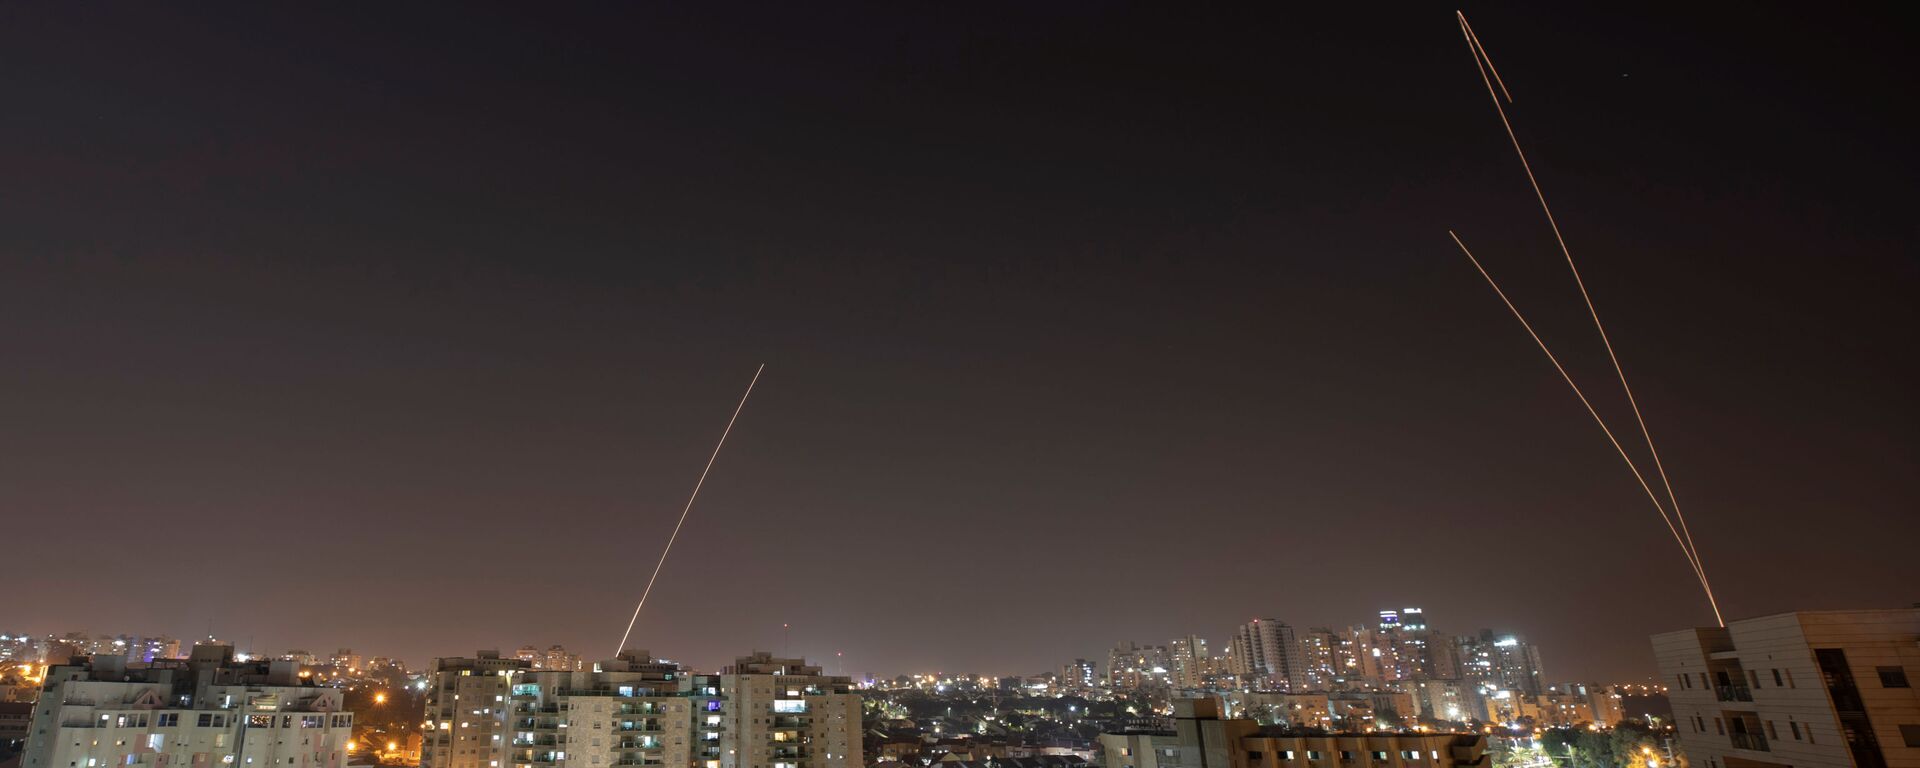 القبة الحديدية تطلق صواريخ اعتراضية أثناء إطلاق الصواريخ من غزة باتجاه إسرائيل بمدينة عسقلان - سبوتنيك عربي, 1920, 05.08.2021